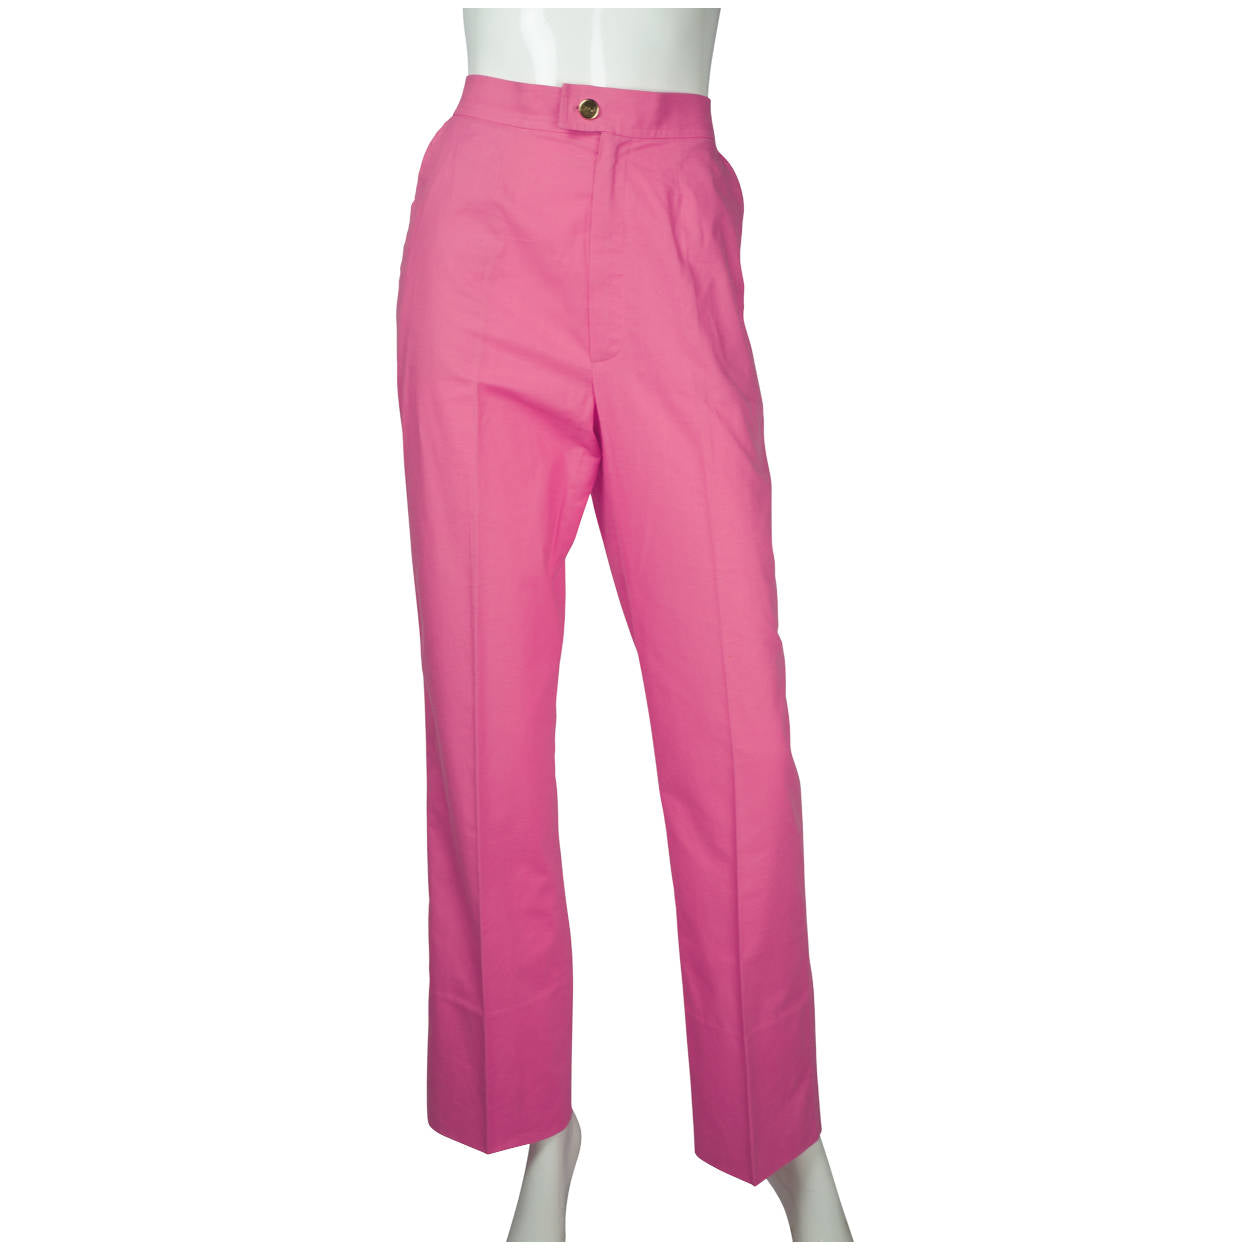 Vintage 1970s Yves Saint Laurent Tricot Paris Pink Cotton Pants NWOT Size M